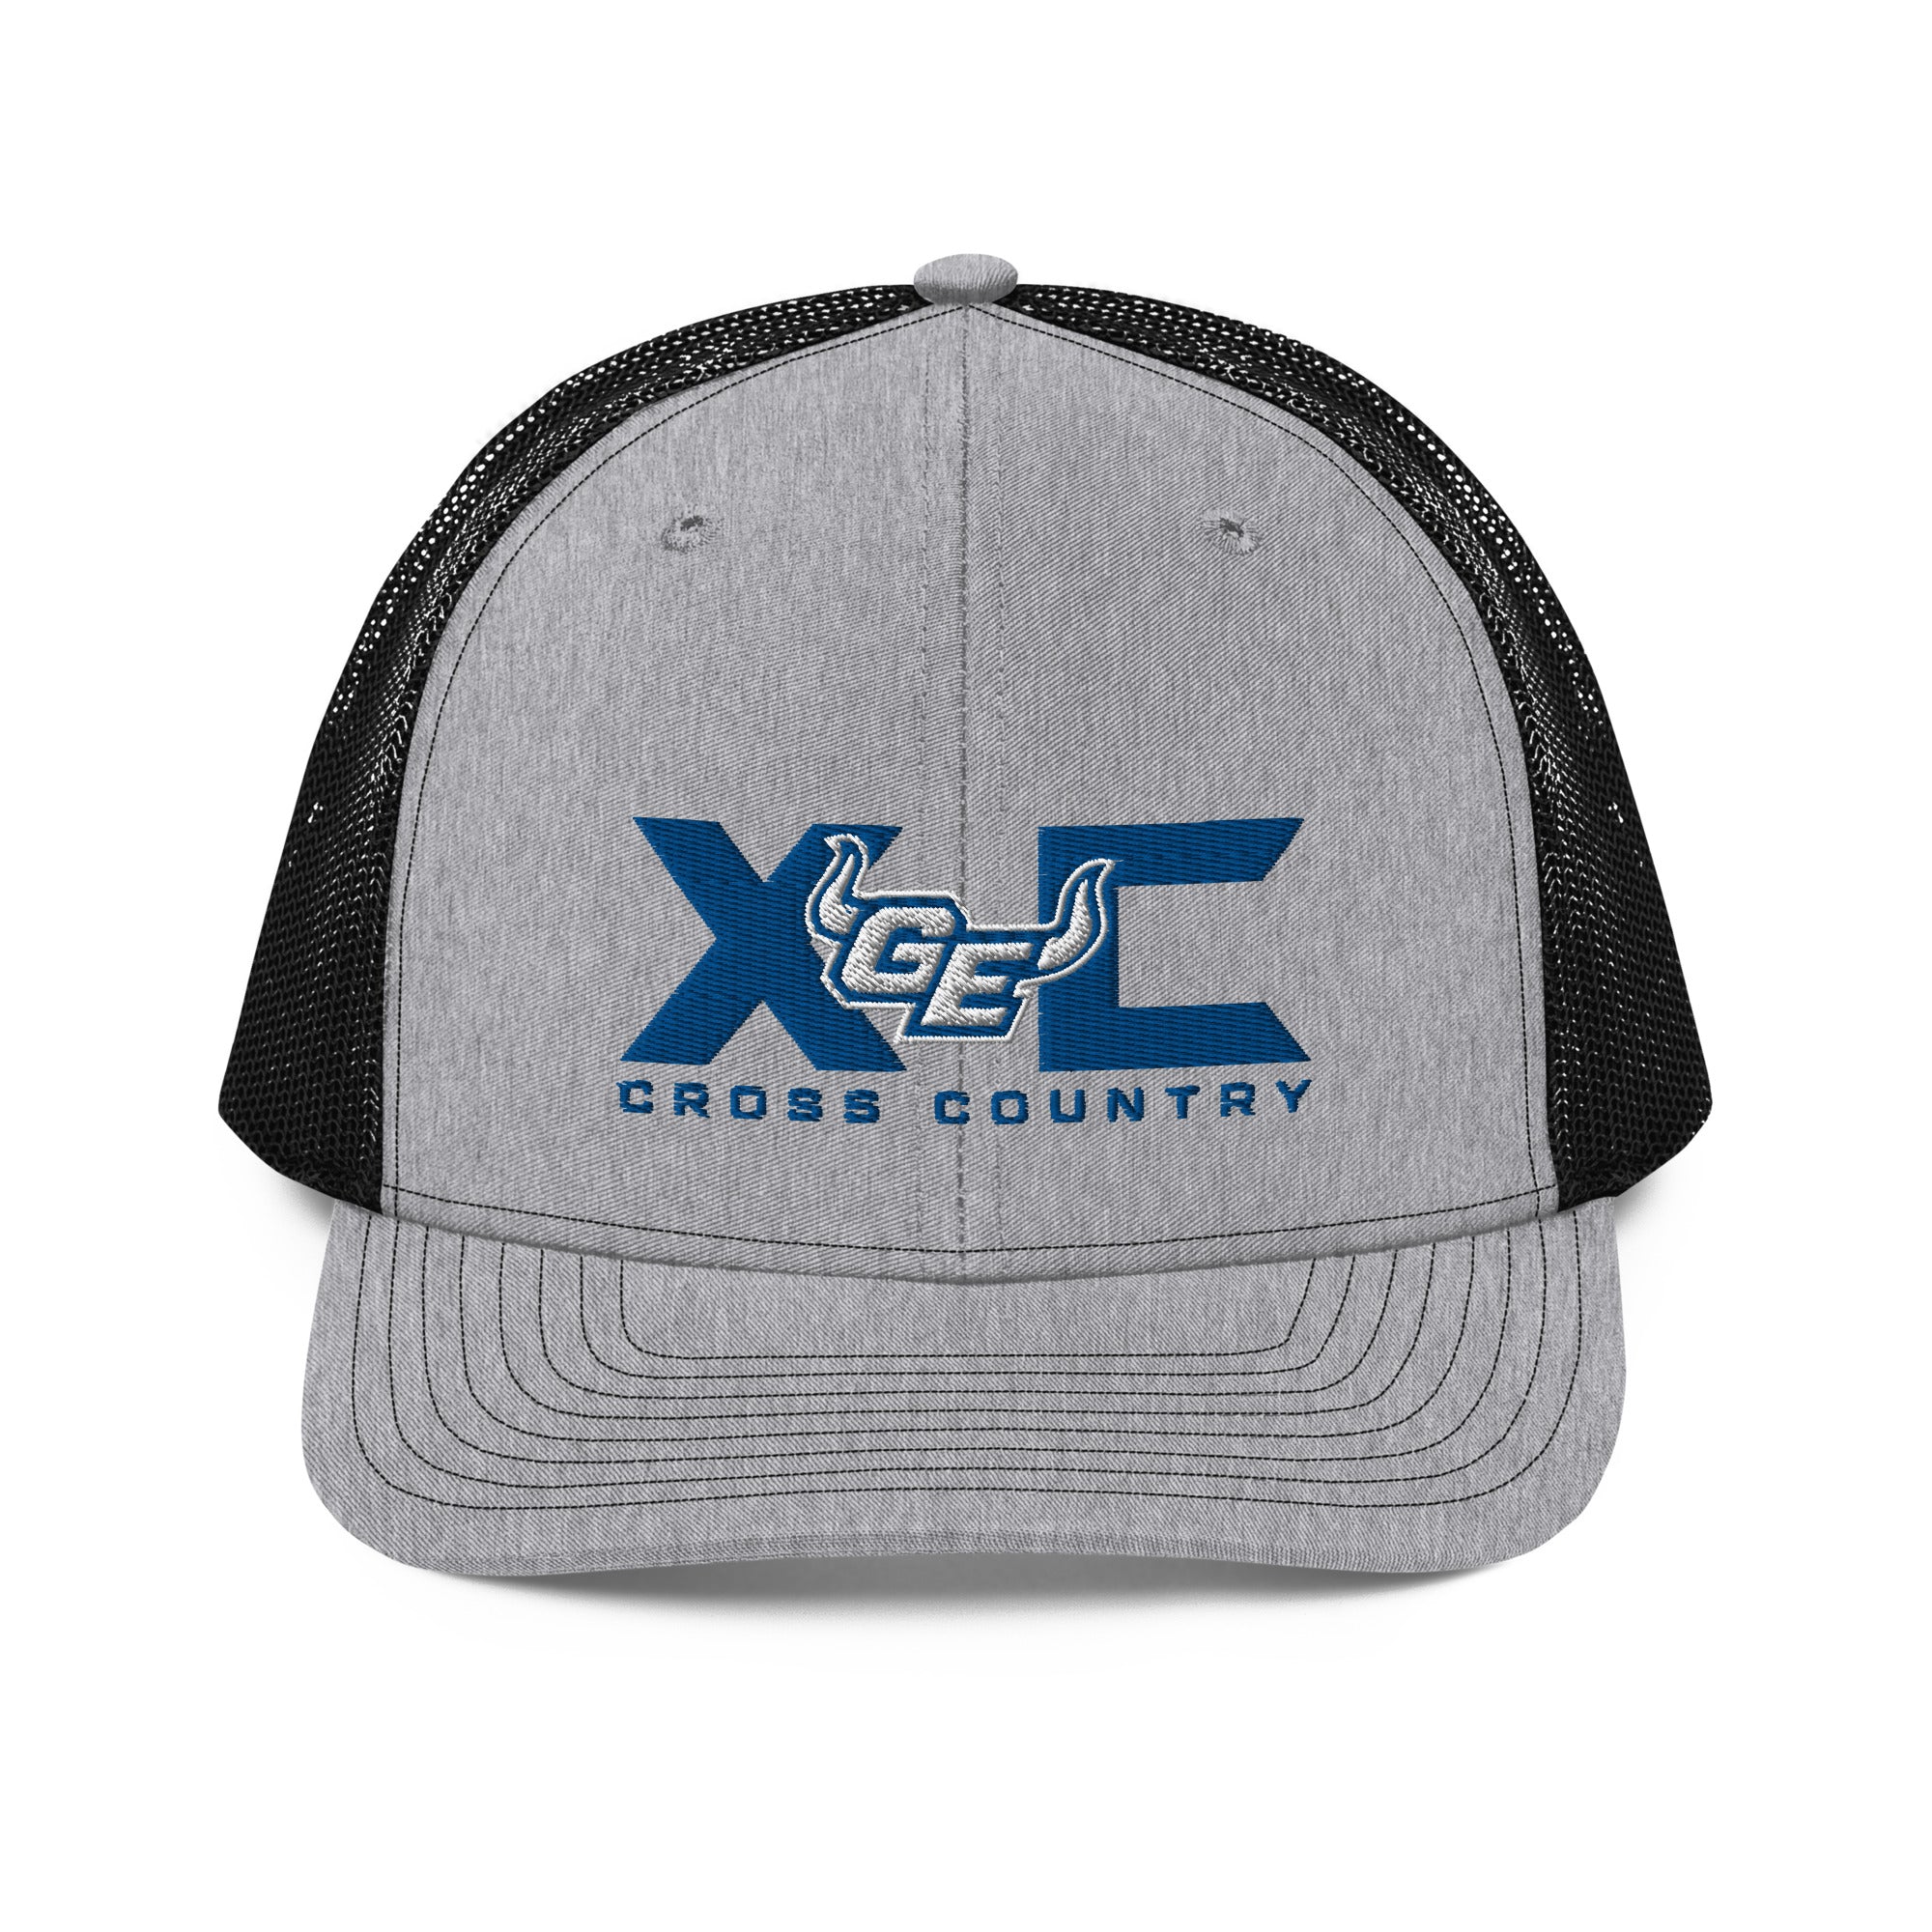 GEXC Cross Country Trucker Cap